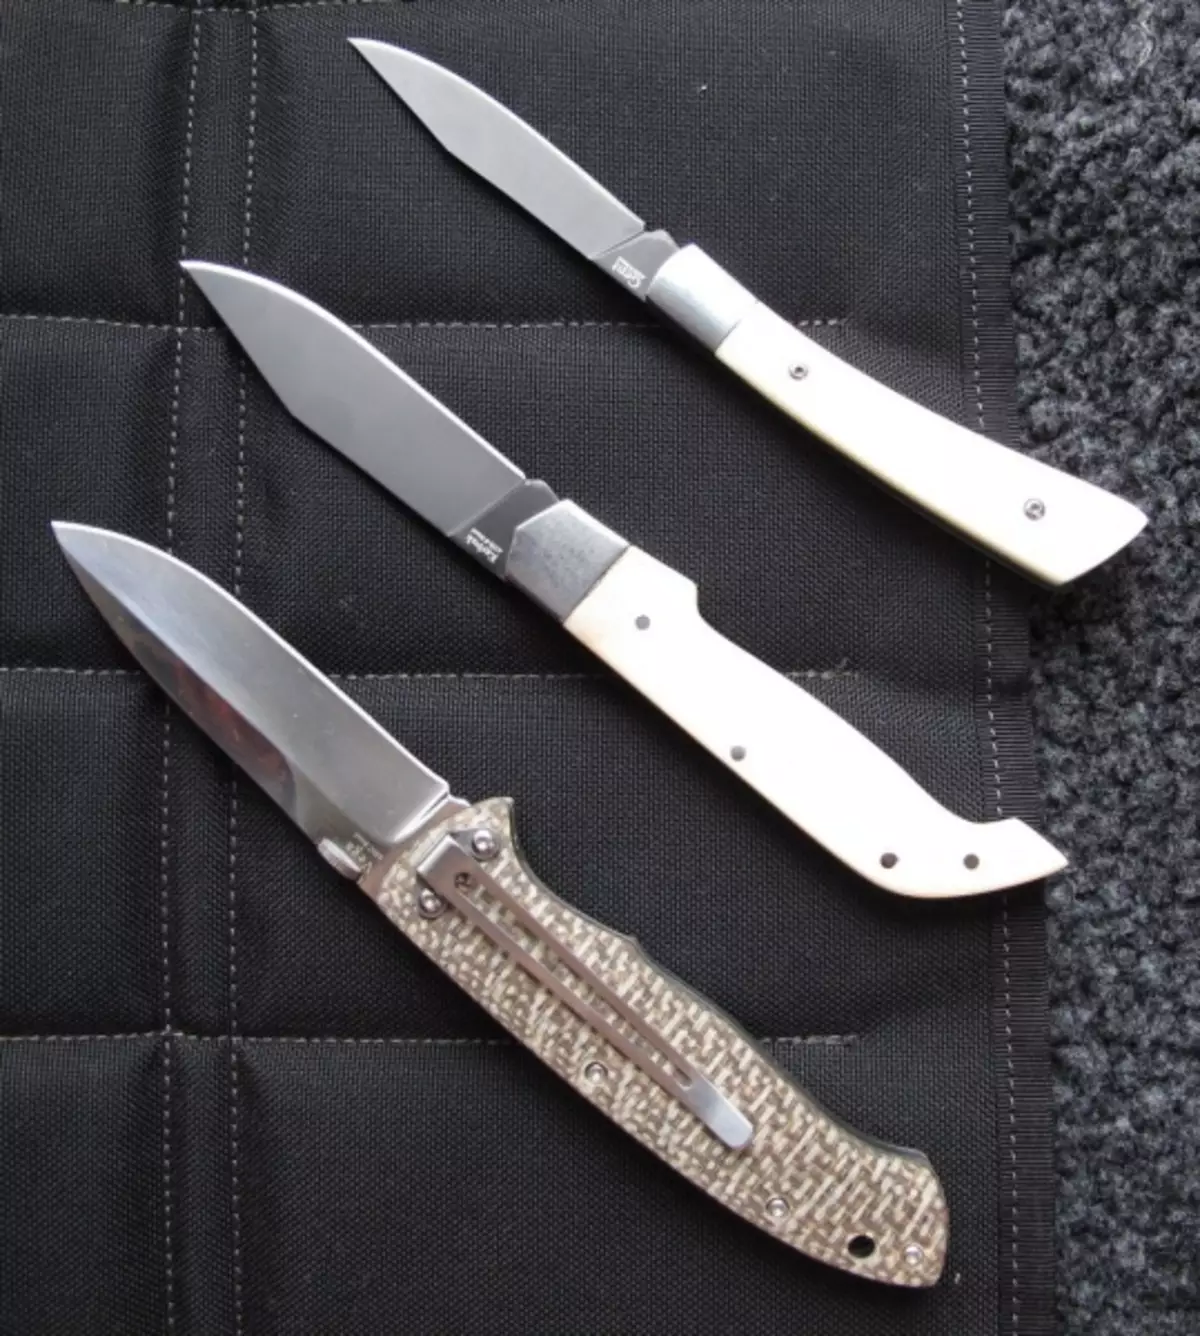 Những con dao nổi tiếng của Kizlyar tốt là gì?